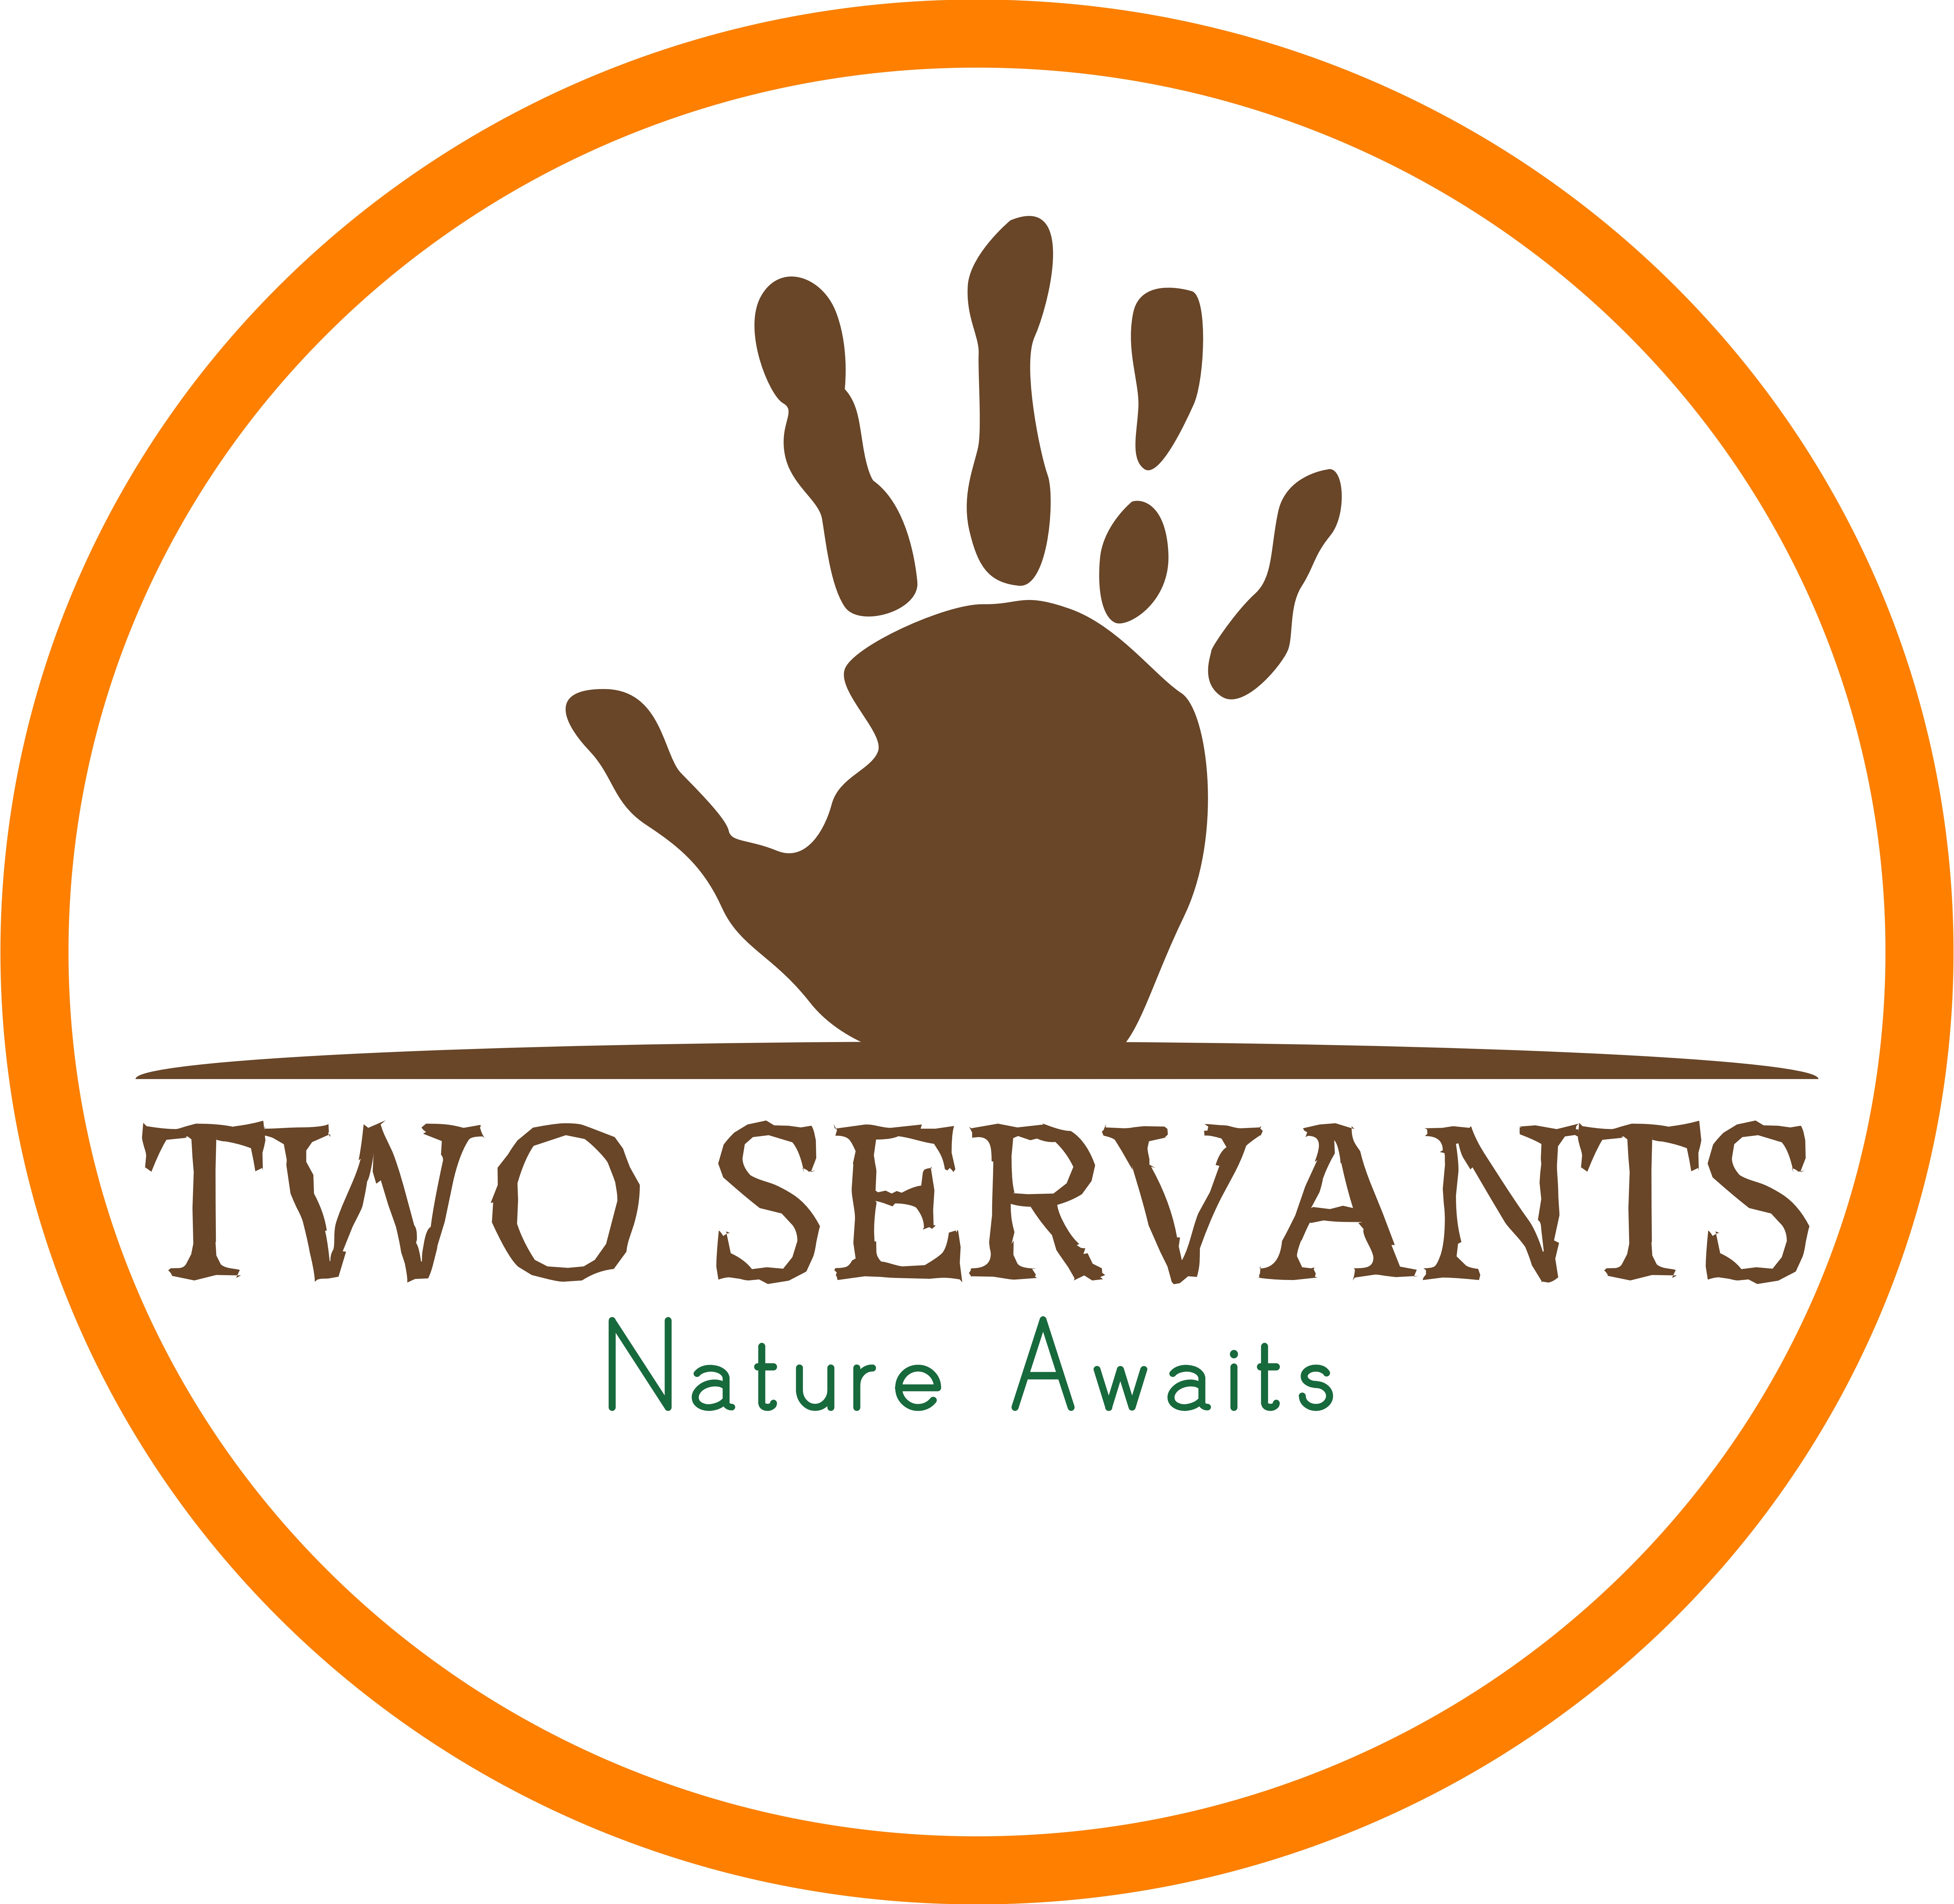 Two Servants Tours & Safaris